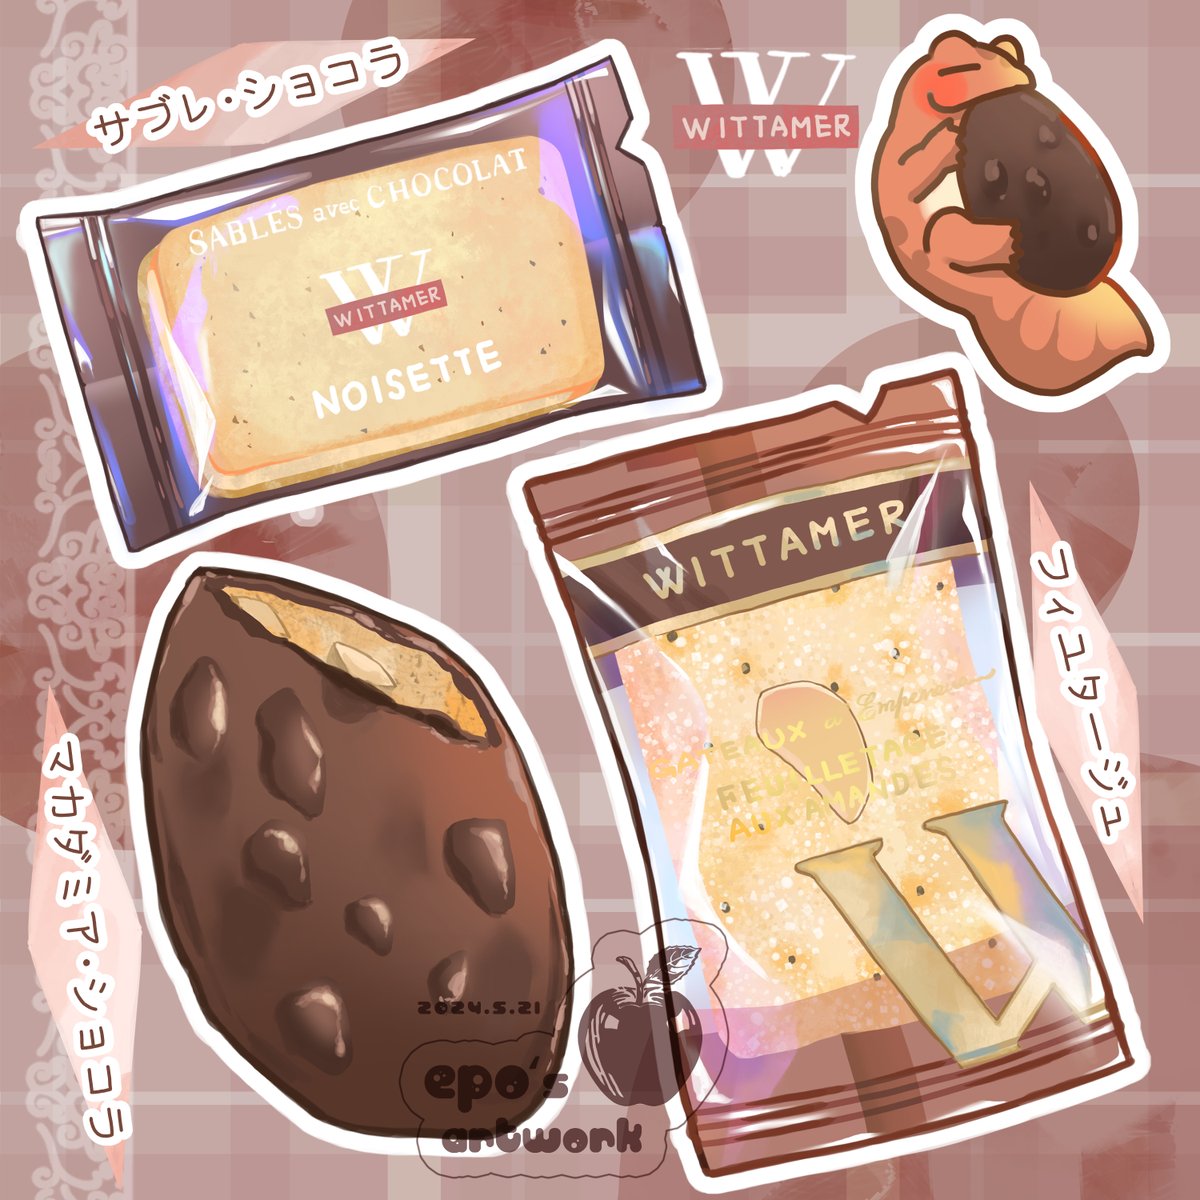 巧克力餅乾！
食物插畫會放在這個帳號，歡迎追蹤～
instagram.com/p/C7VhBQJySYl/…